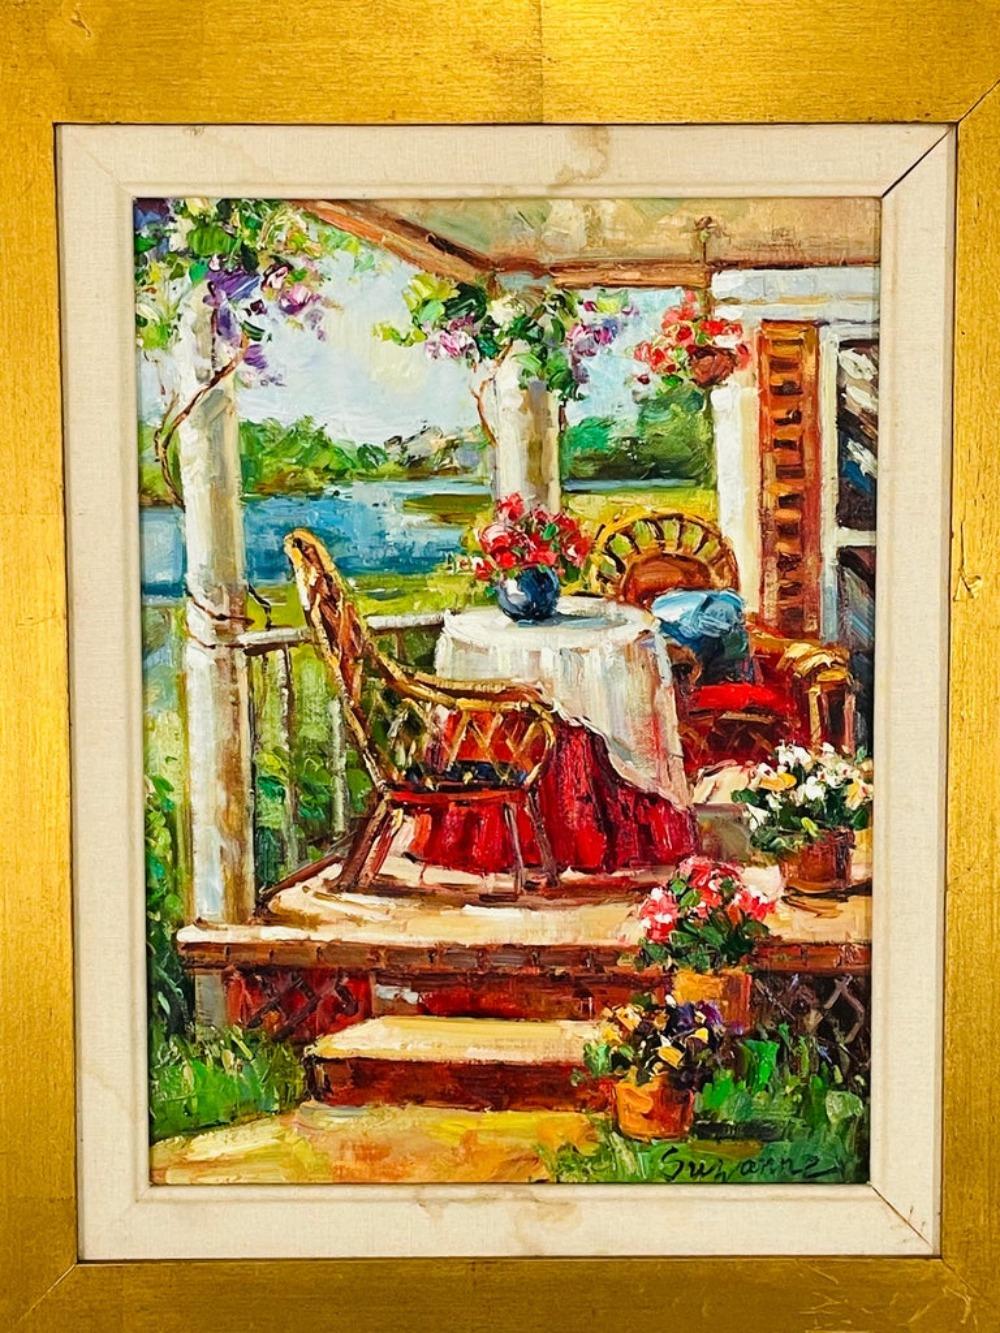 Ein wunderschönes Ölgemälde auf Leinwand aus den 1980er Jahren, das die Veranda eines Hauses zeigt. Das Gemälde zeigt den Blick auf ein elegantes Landhaus-Deck, das fehlt. Dieses schöne Gemälde ist fein in einem vergoldeten benutzerdefinierten